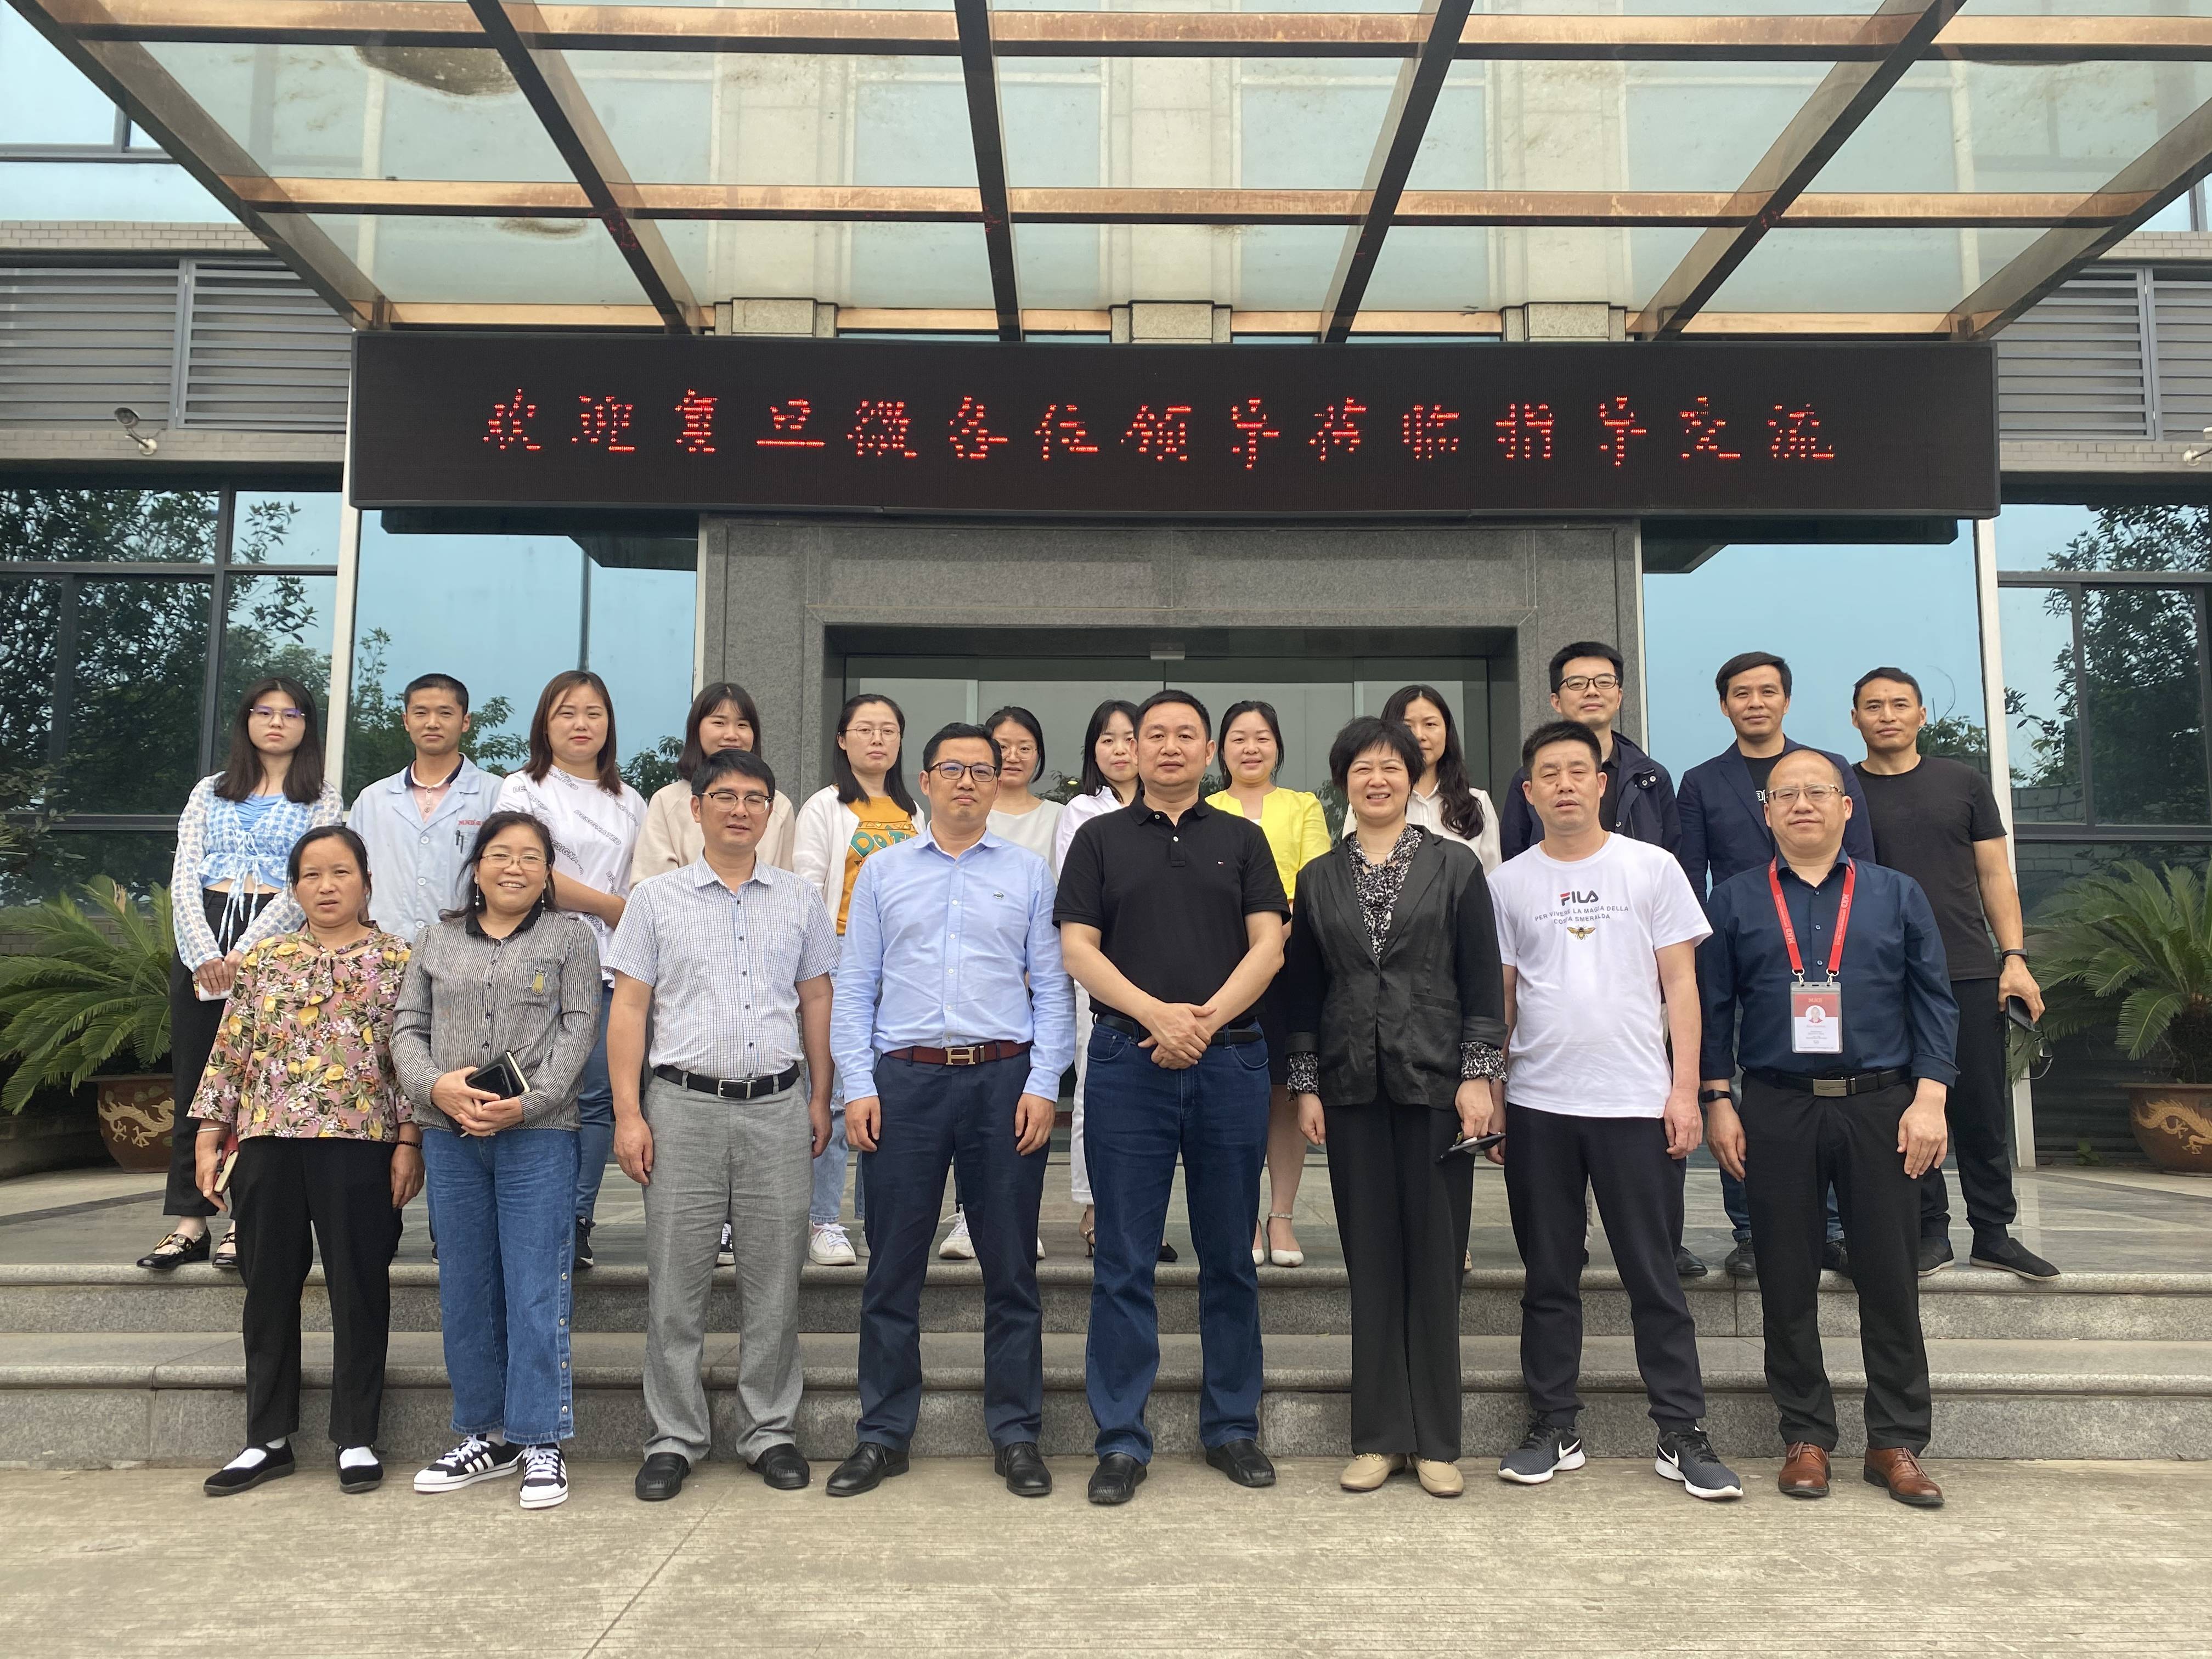 FUDAN MICROELECTRONICS GROUP այցելեք մեր ընկերություն՝ վերապատրաստման ուղեցույցի չիպային գիտելիքների համար